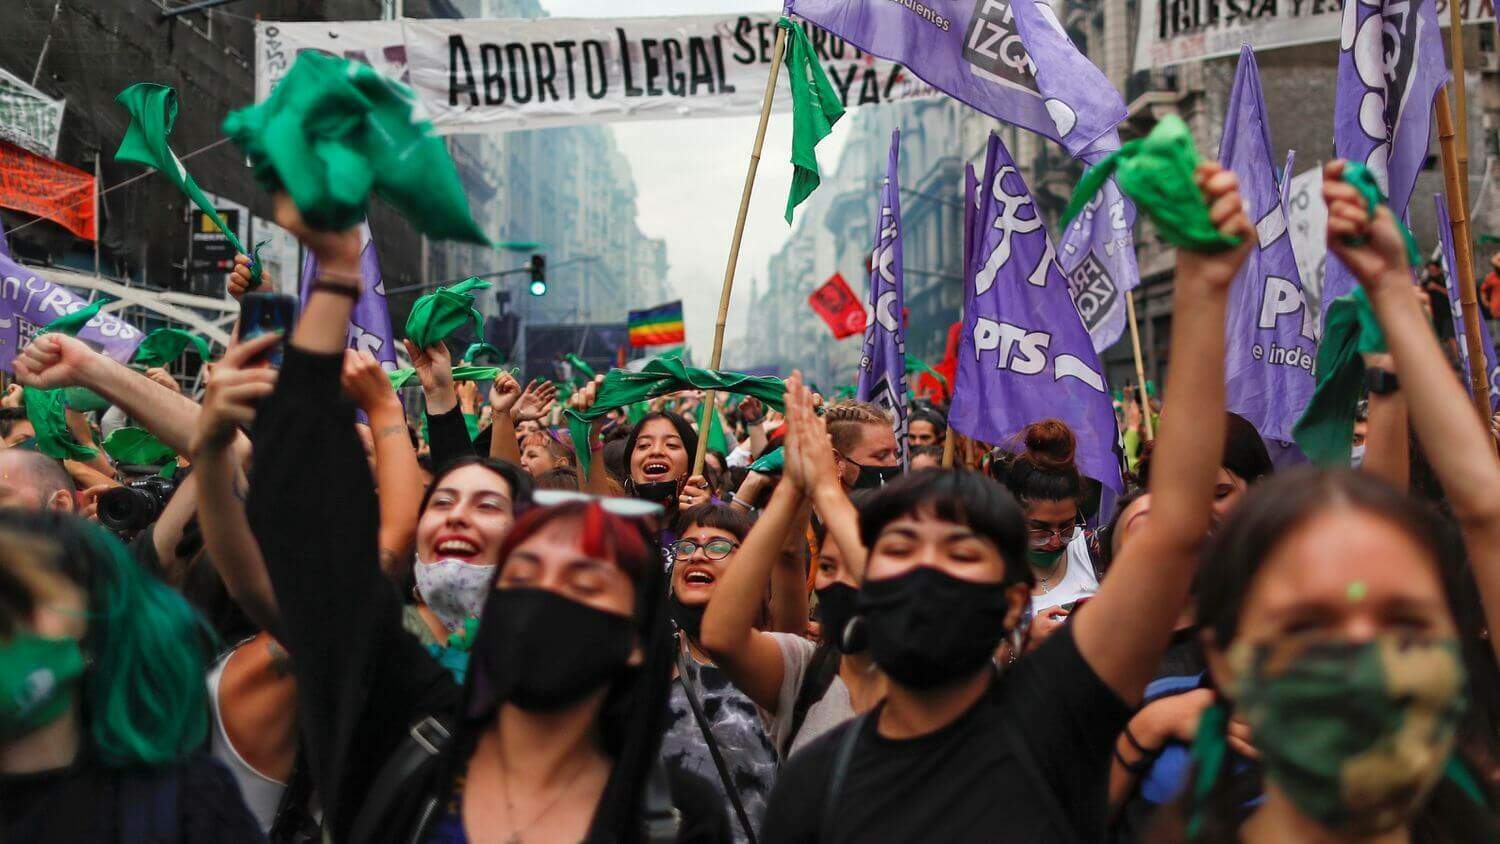 Passeata pelo aborto legal na Argentina. Dia da Luta pela Descriminalização e Legalização do Aborto na América Latina e Caribe